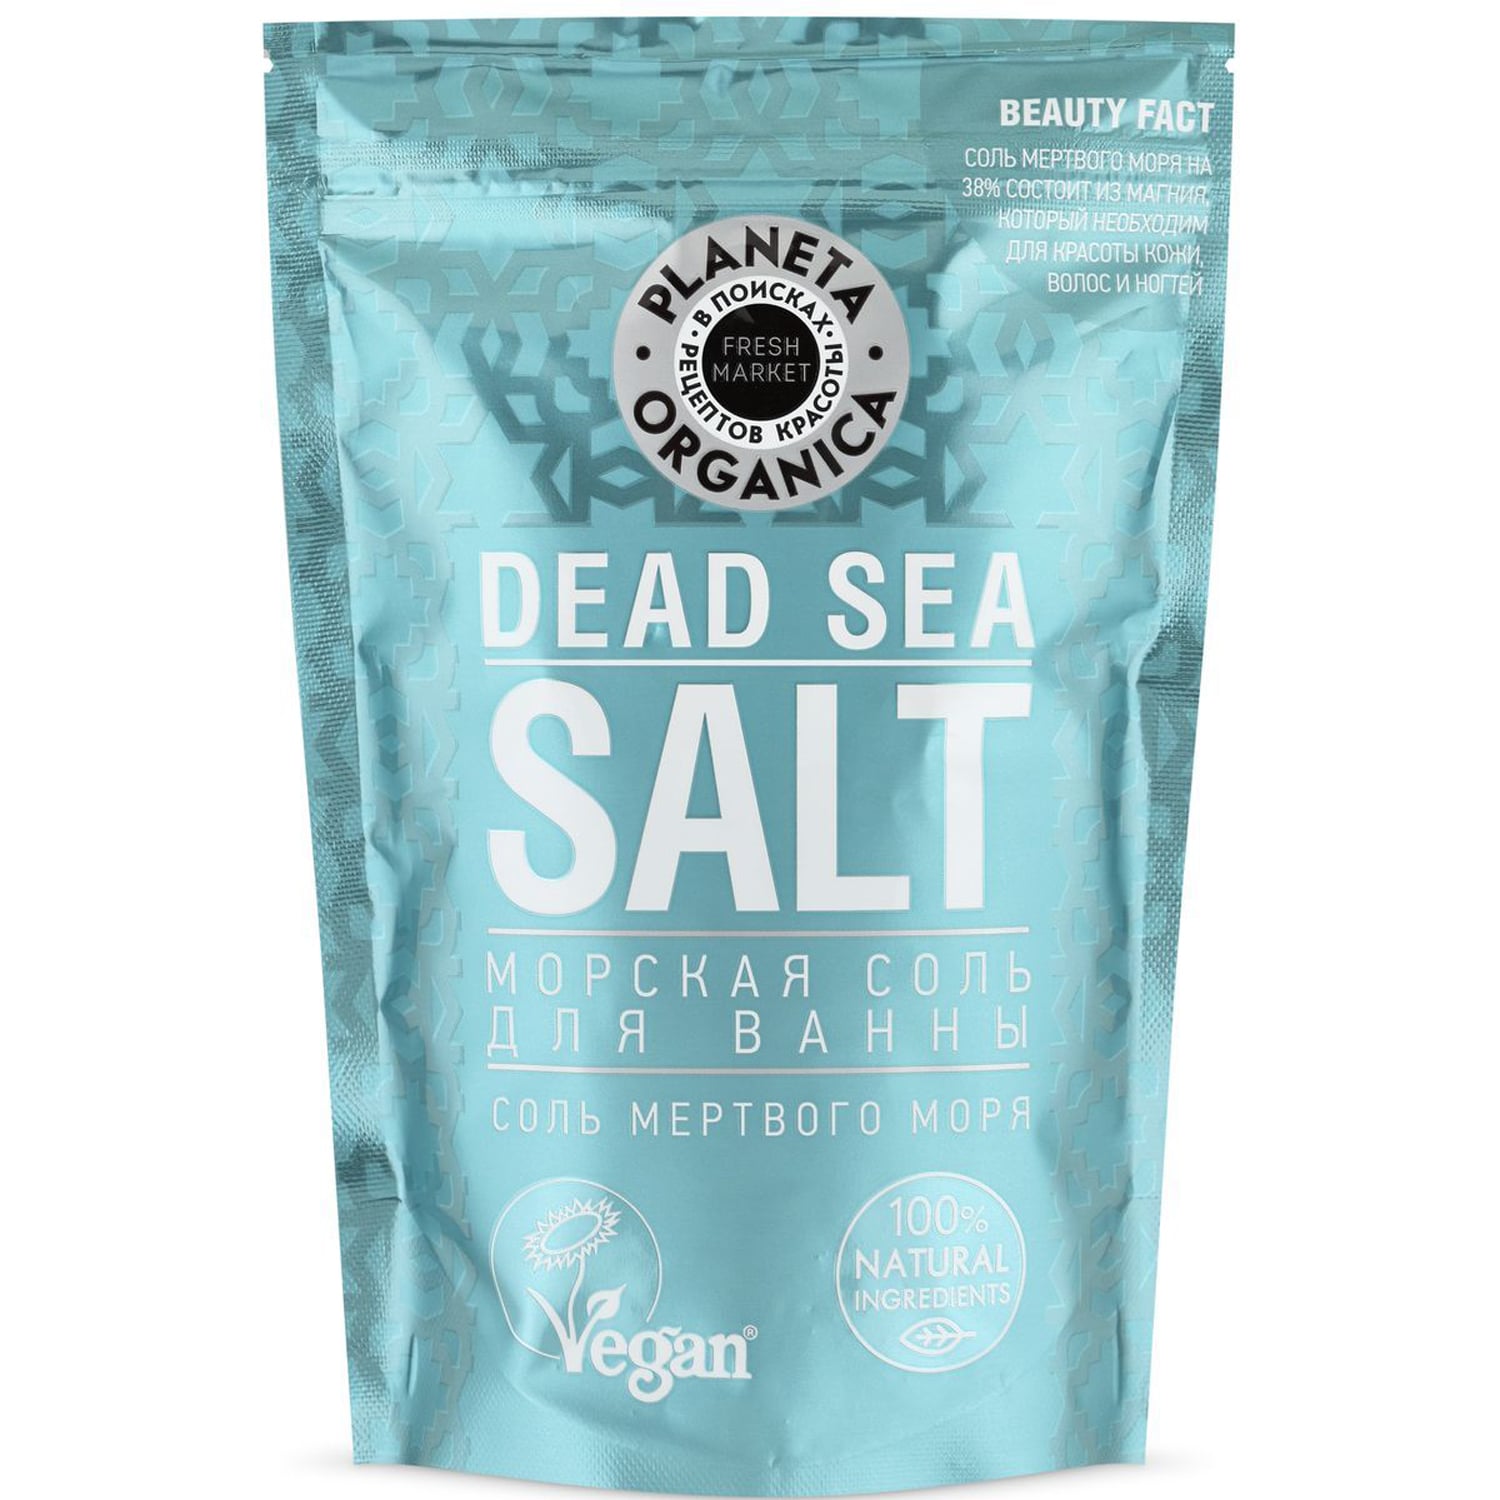 многофункциональный мист для лица с солью мертвого моря selfielab young 110 мл Planeta Organica Морская соль для ванны, 400 г (Planeta Organica, Fresh Market)